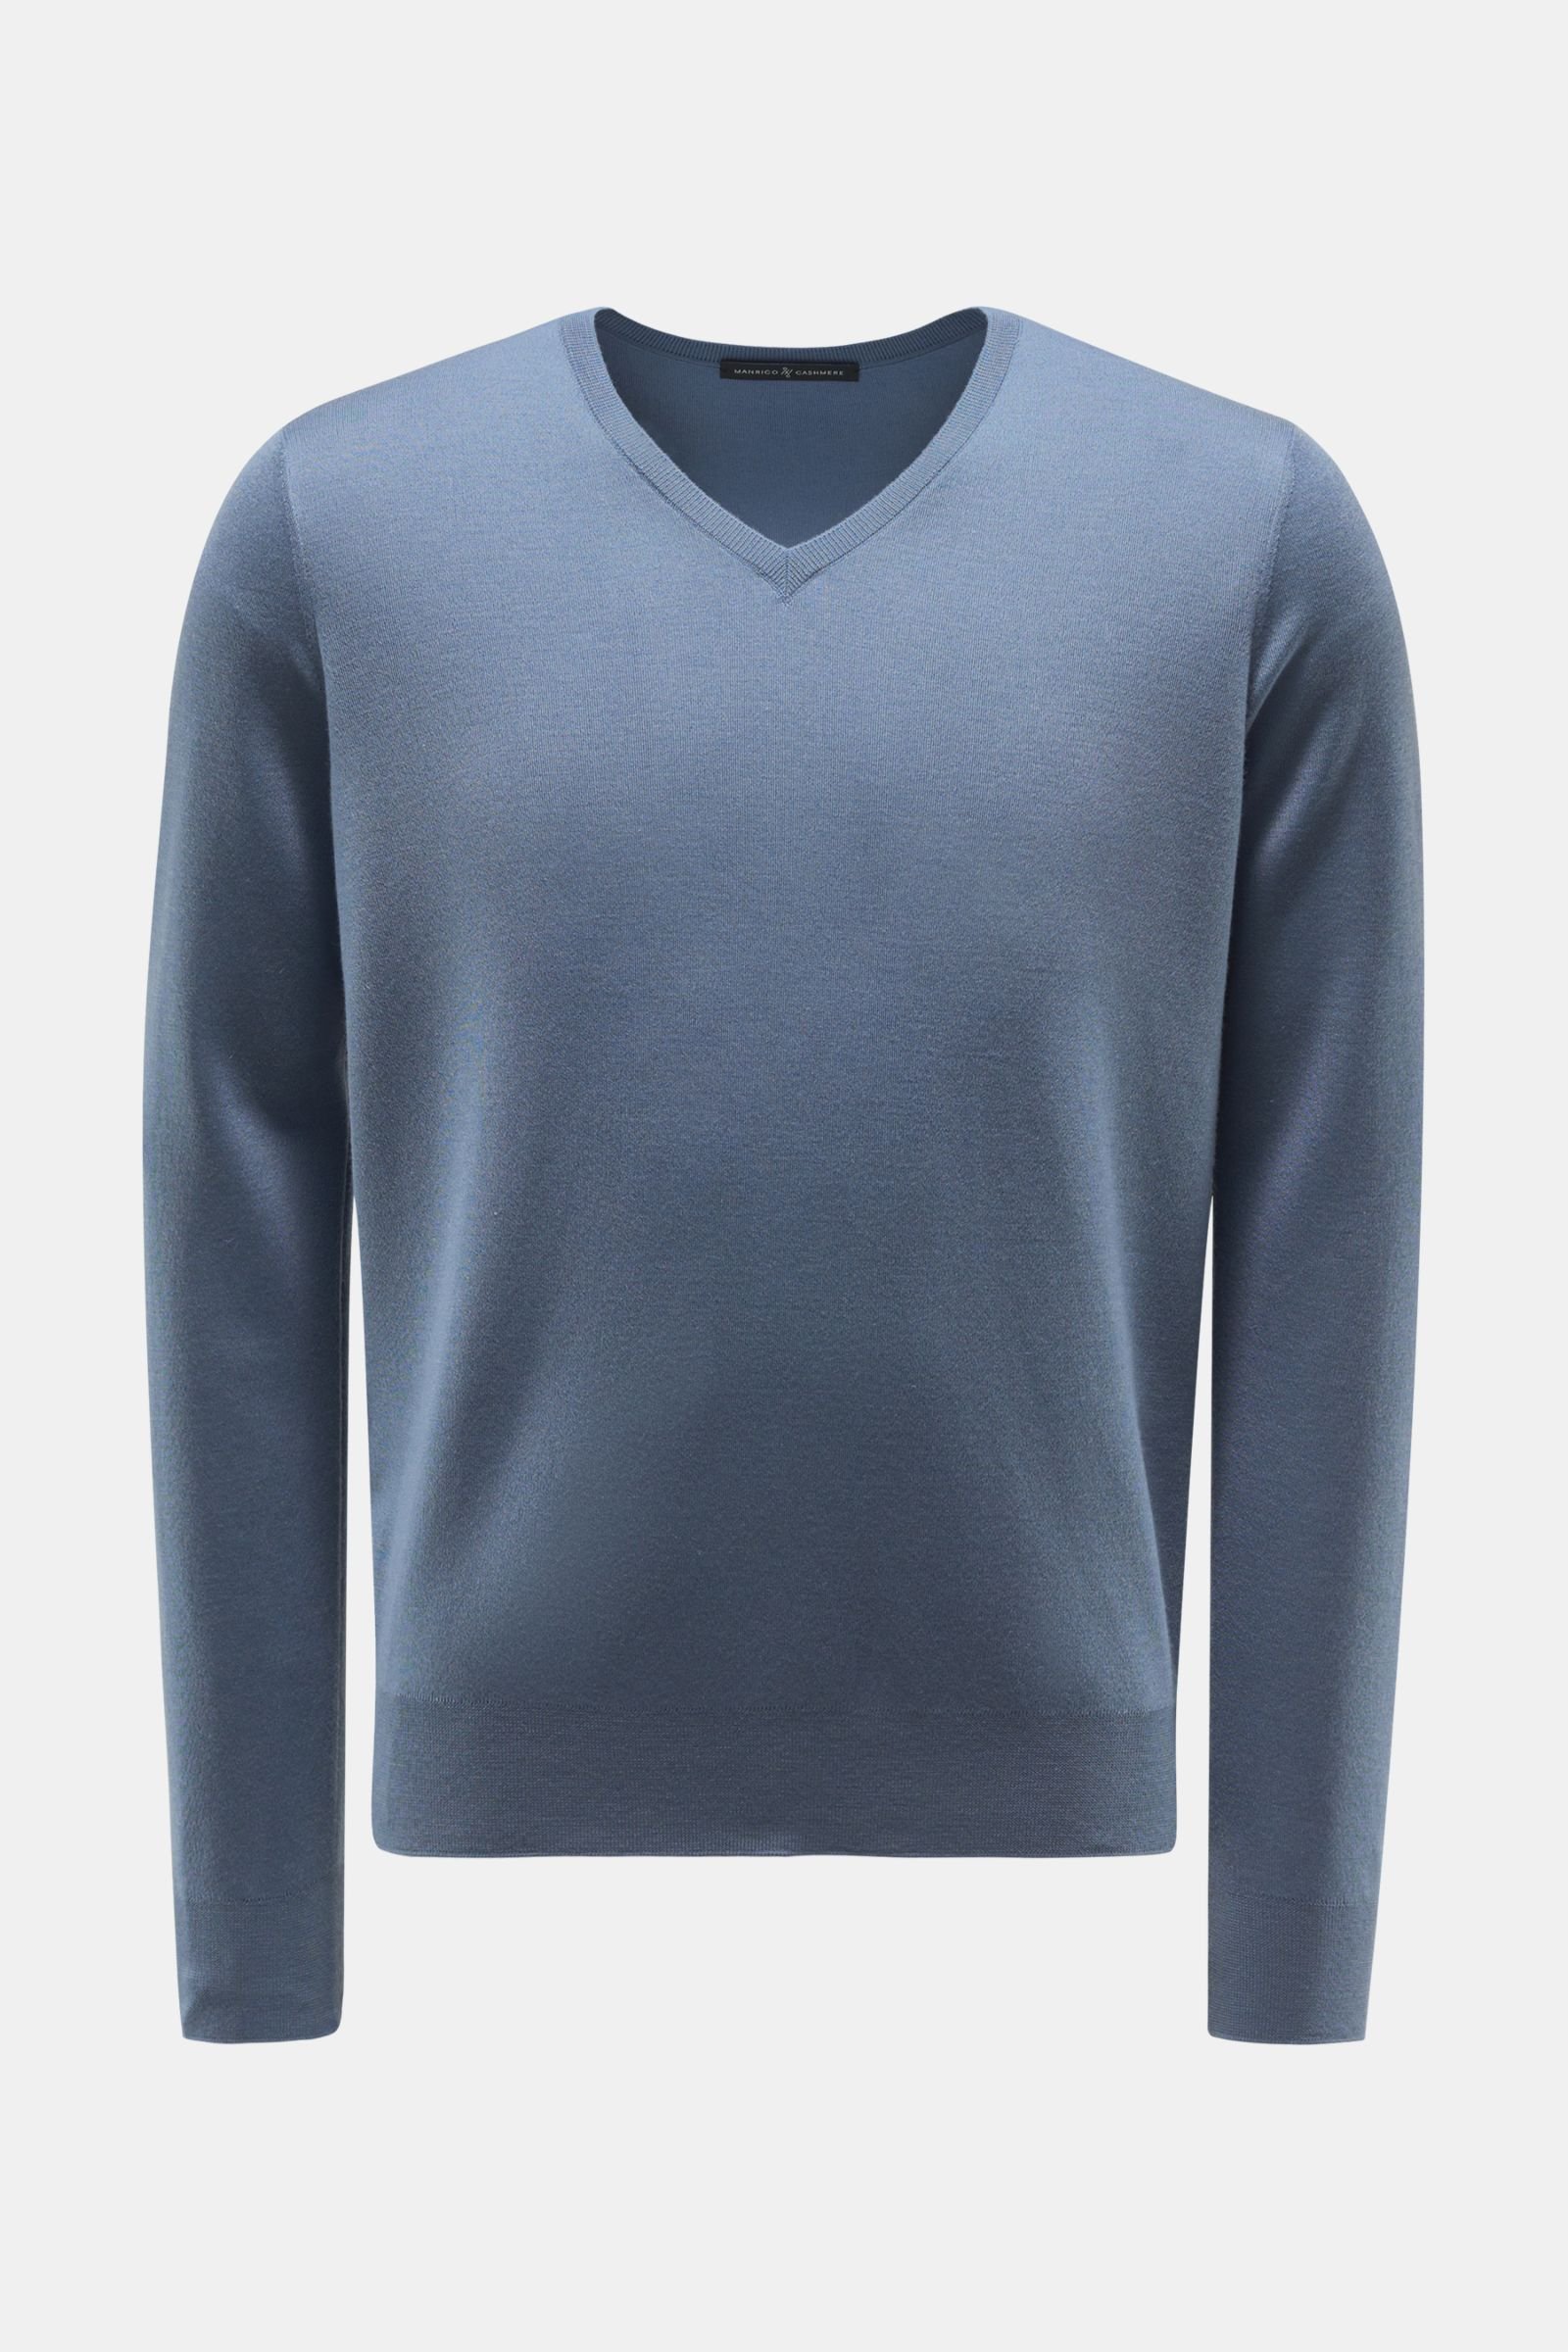 Cashmere Feinstrick-Pullover graublau